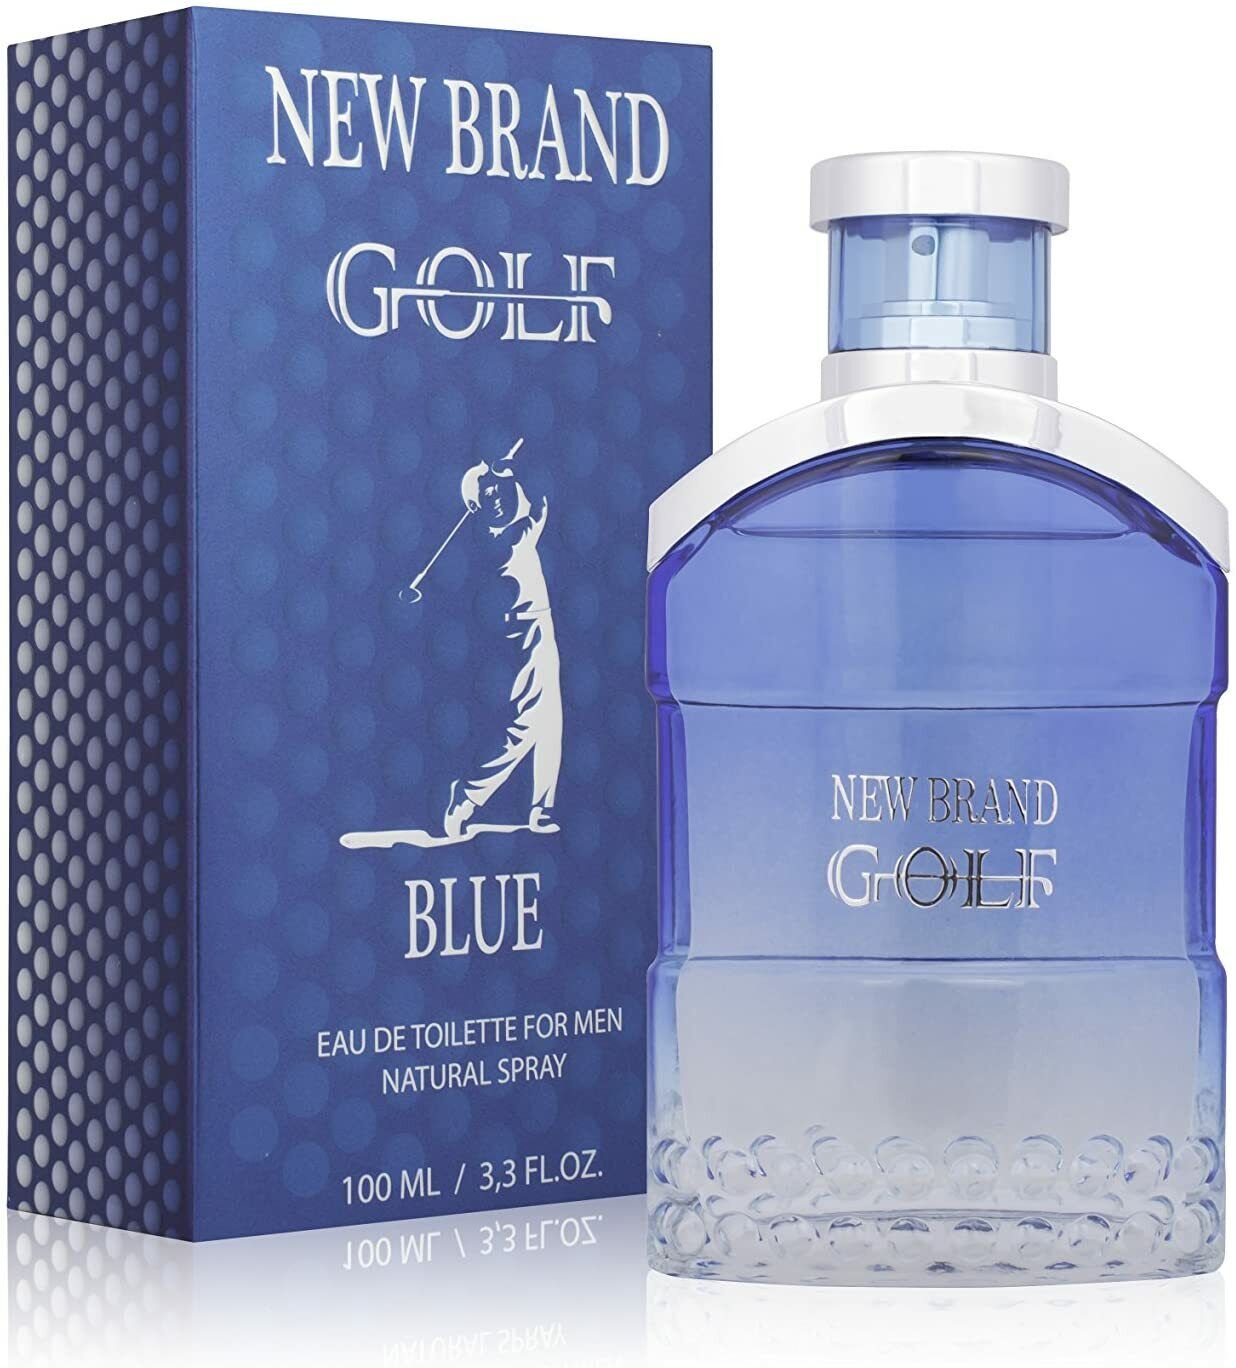 New Brand Golf Blue 100ml Eau De Toilette